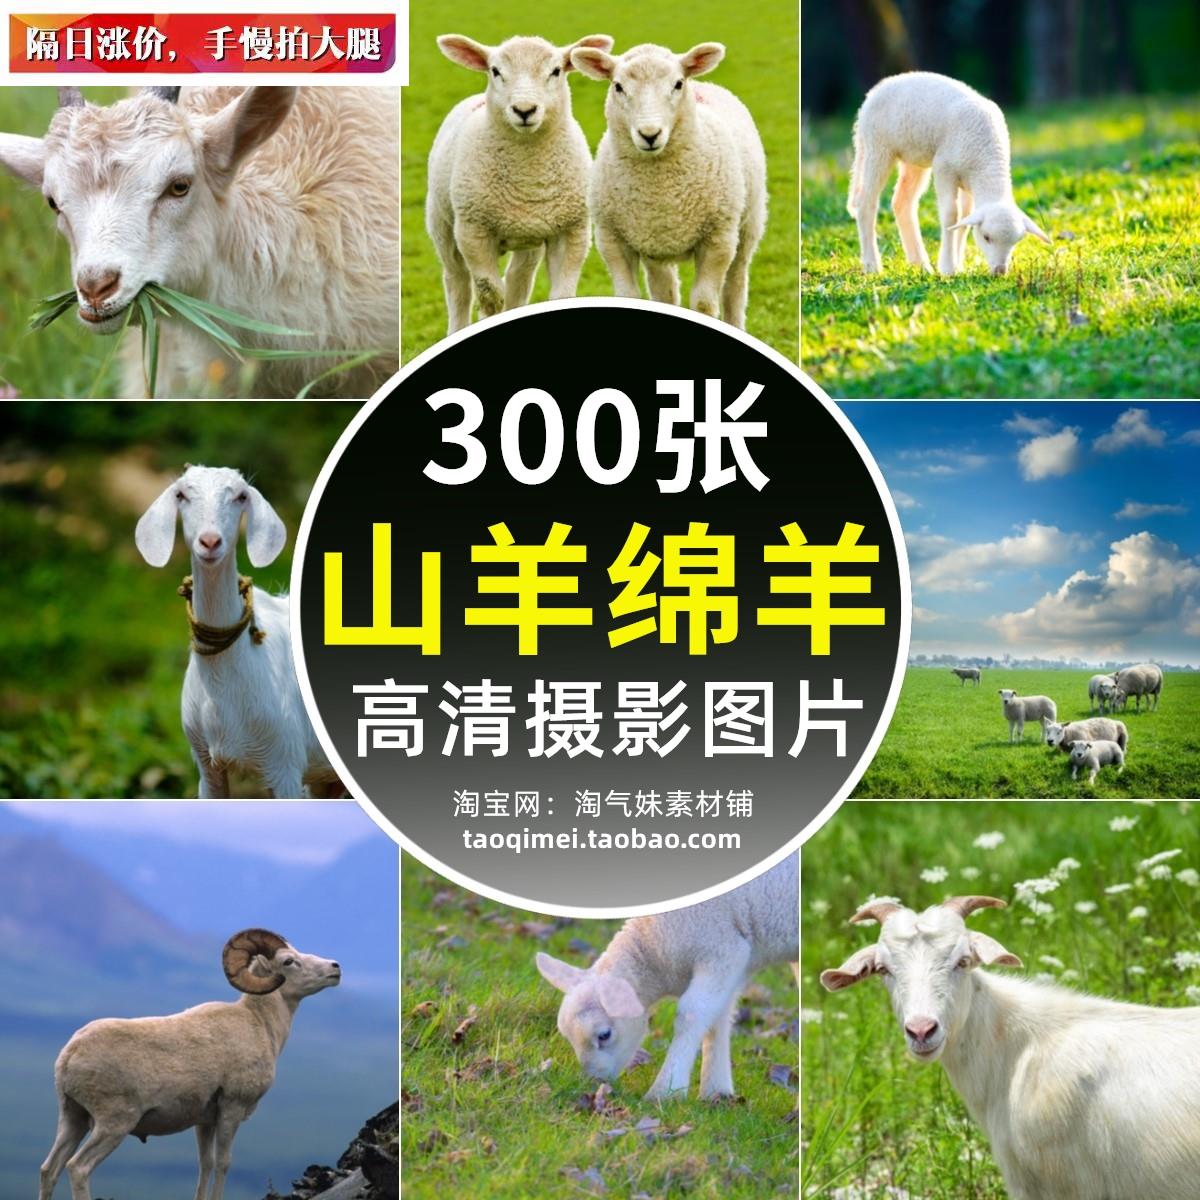 JPG高清羊图片山羊绵羊羚羊群小羊羔草原牧场家畜动物设计ps素材